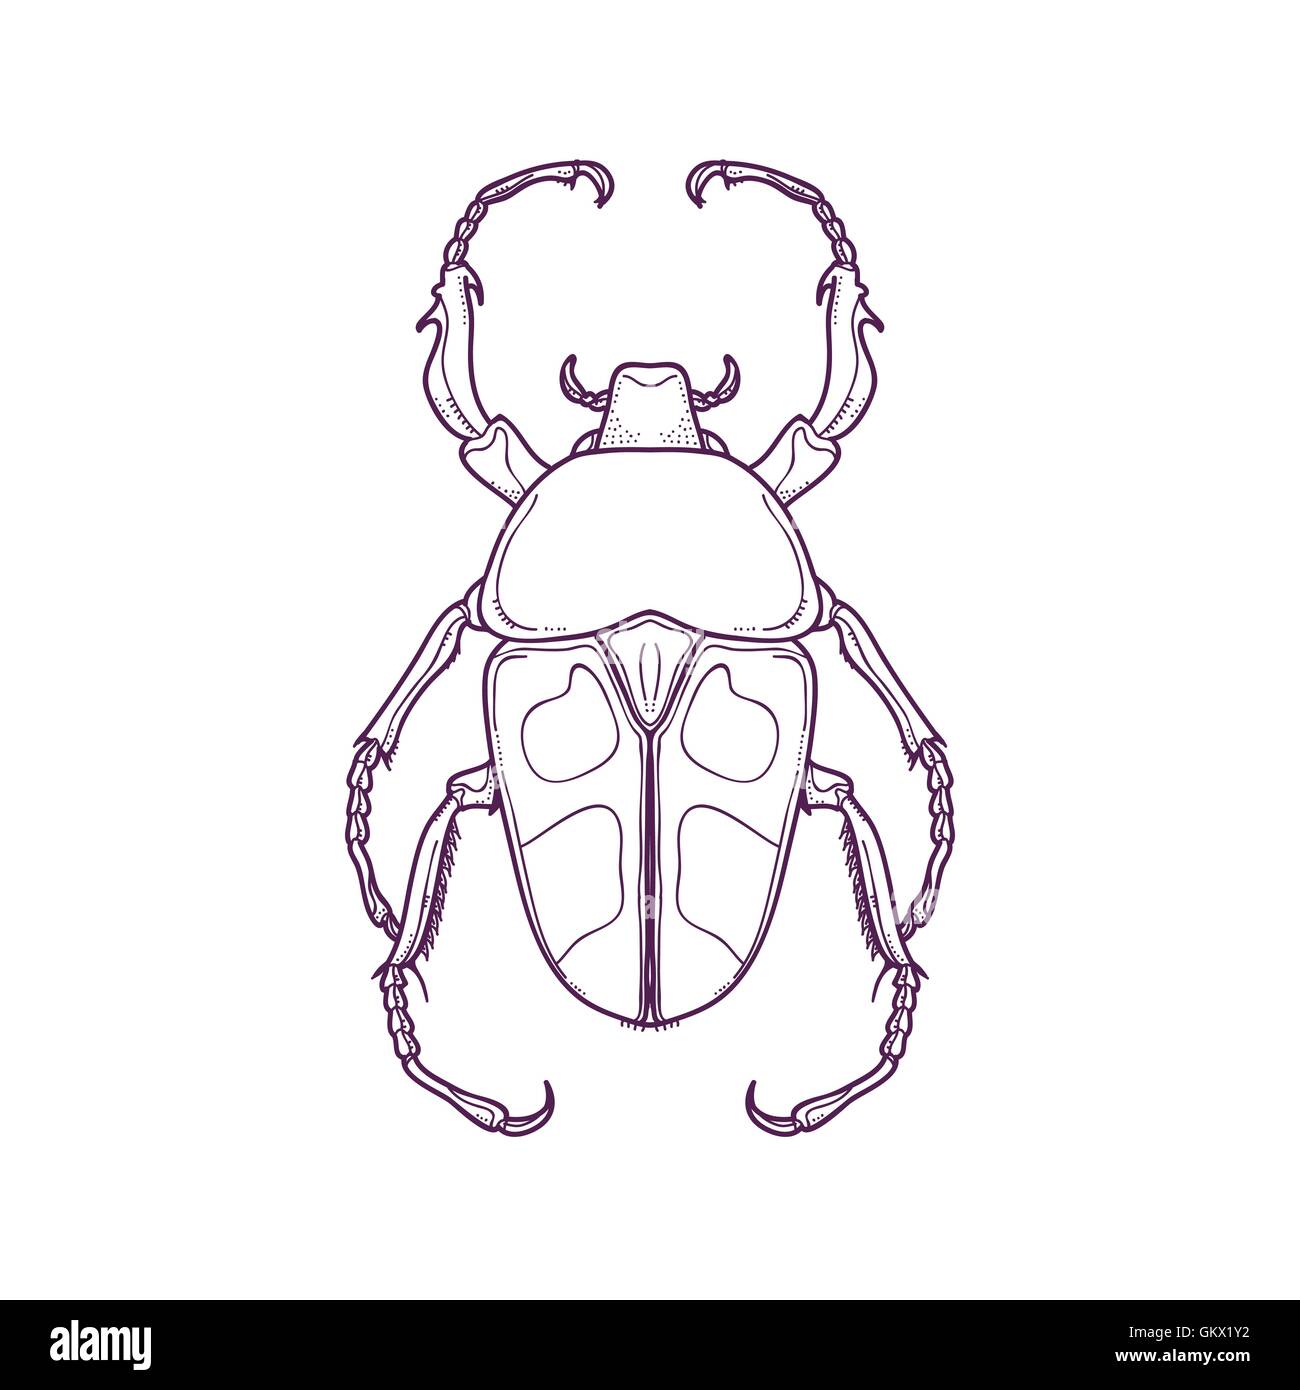 Vektor Illustration der Gliederung Beetle Bug Insekt Hand gezeichnet zum Ausmalen, Jumnos ruckeri Stock Vektor